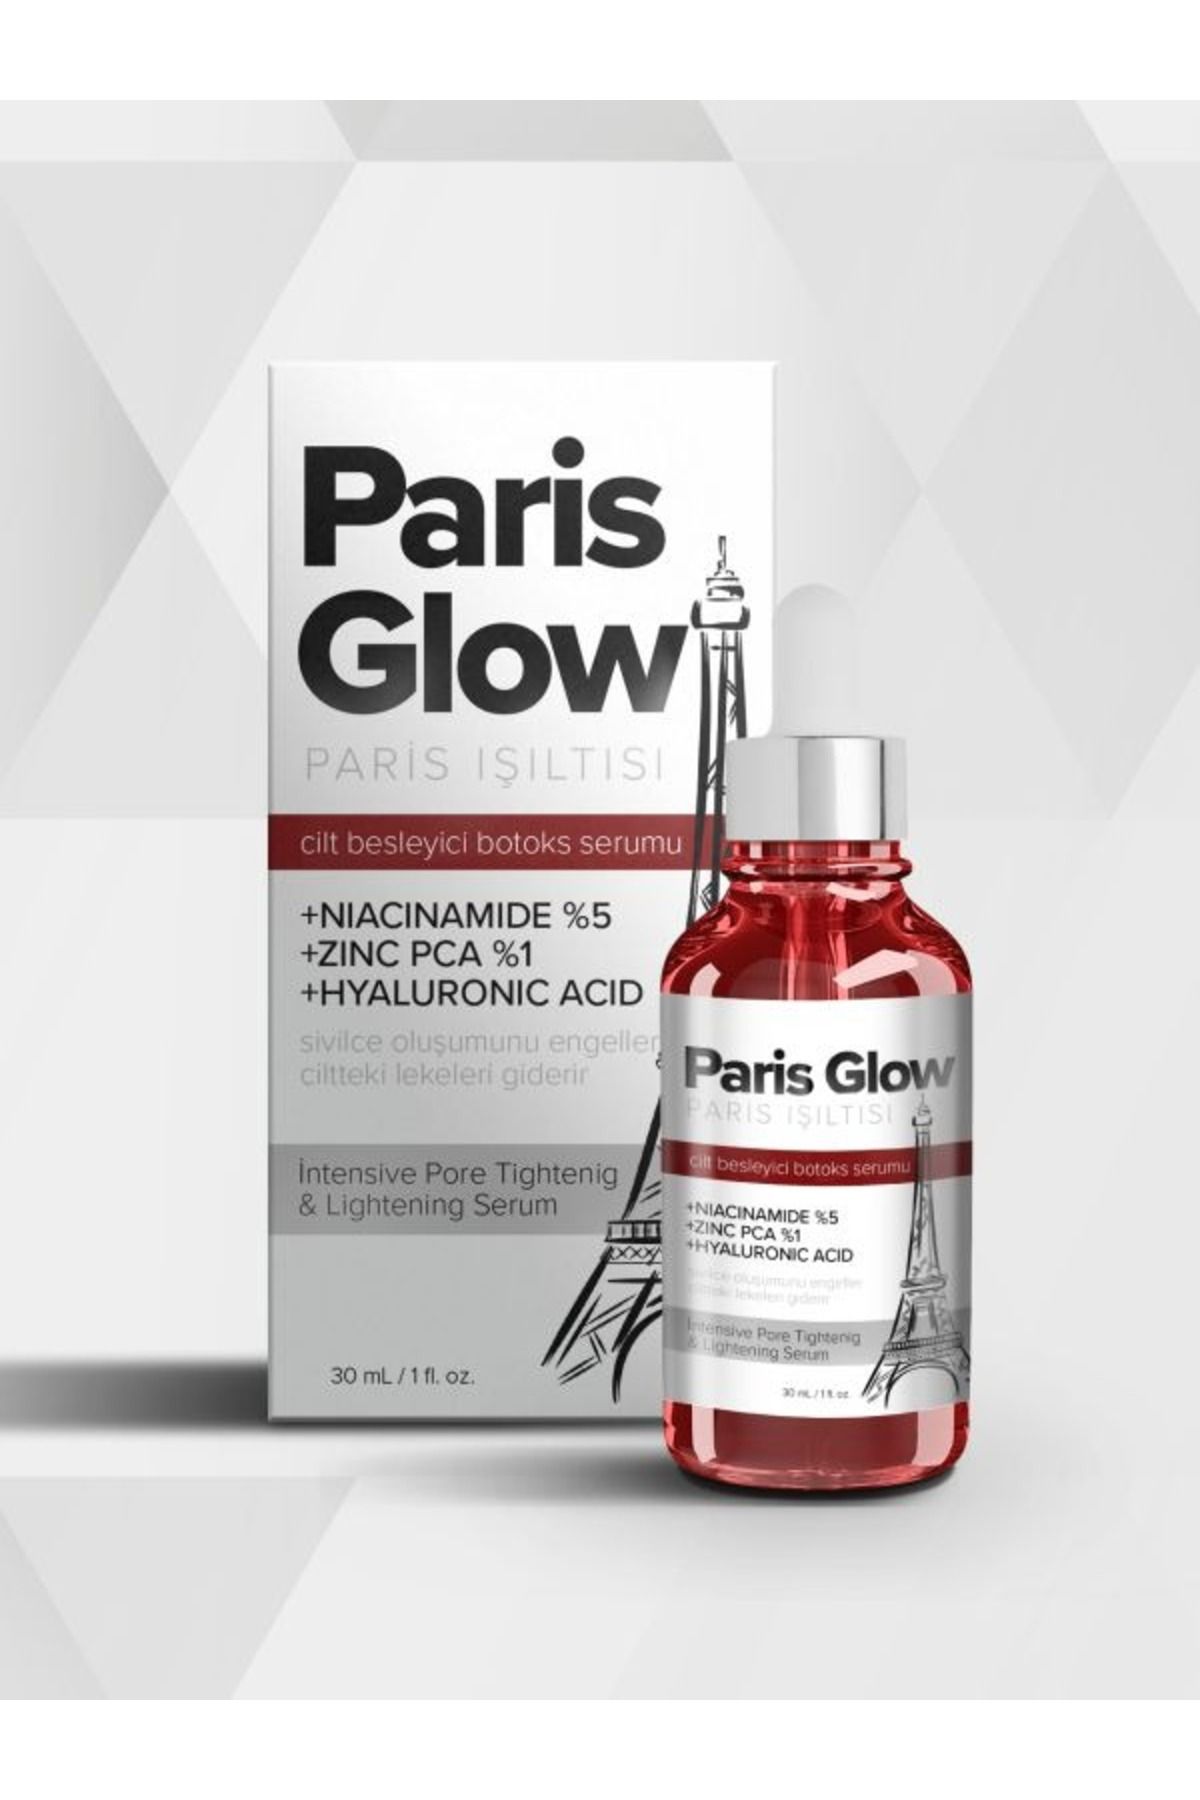 parisglow Paris Işıltısı Highlighter Yaşlanma Kırışıklık Karşıtı Etkili Serum 30ml